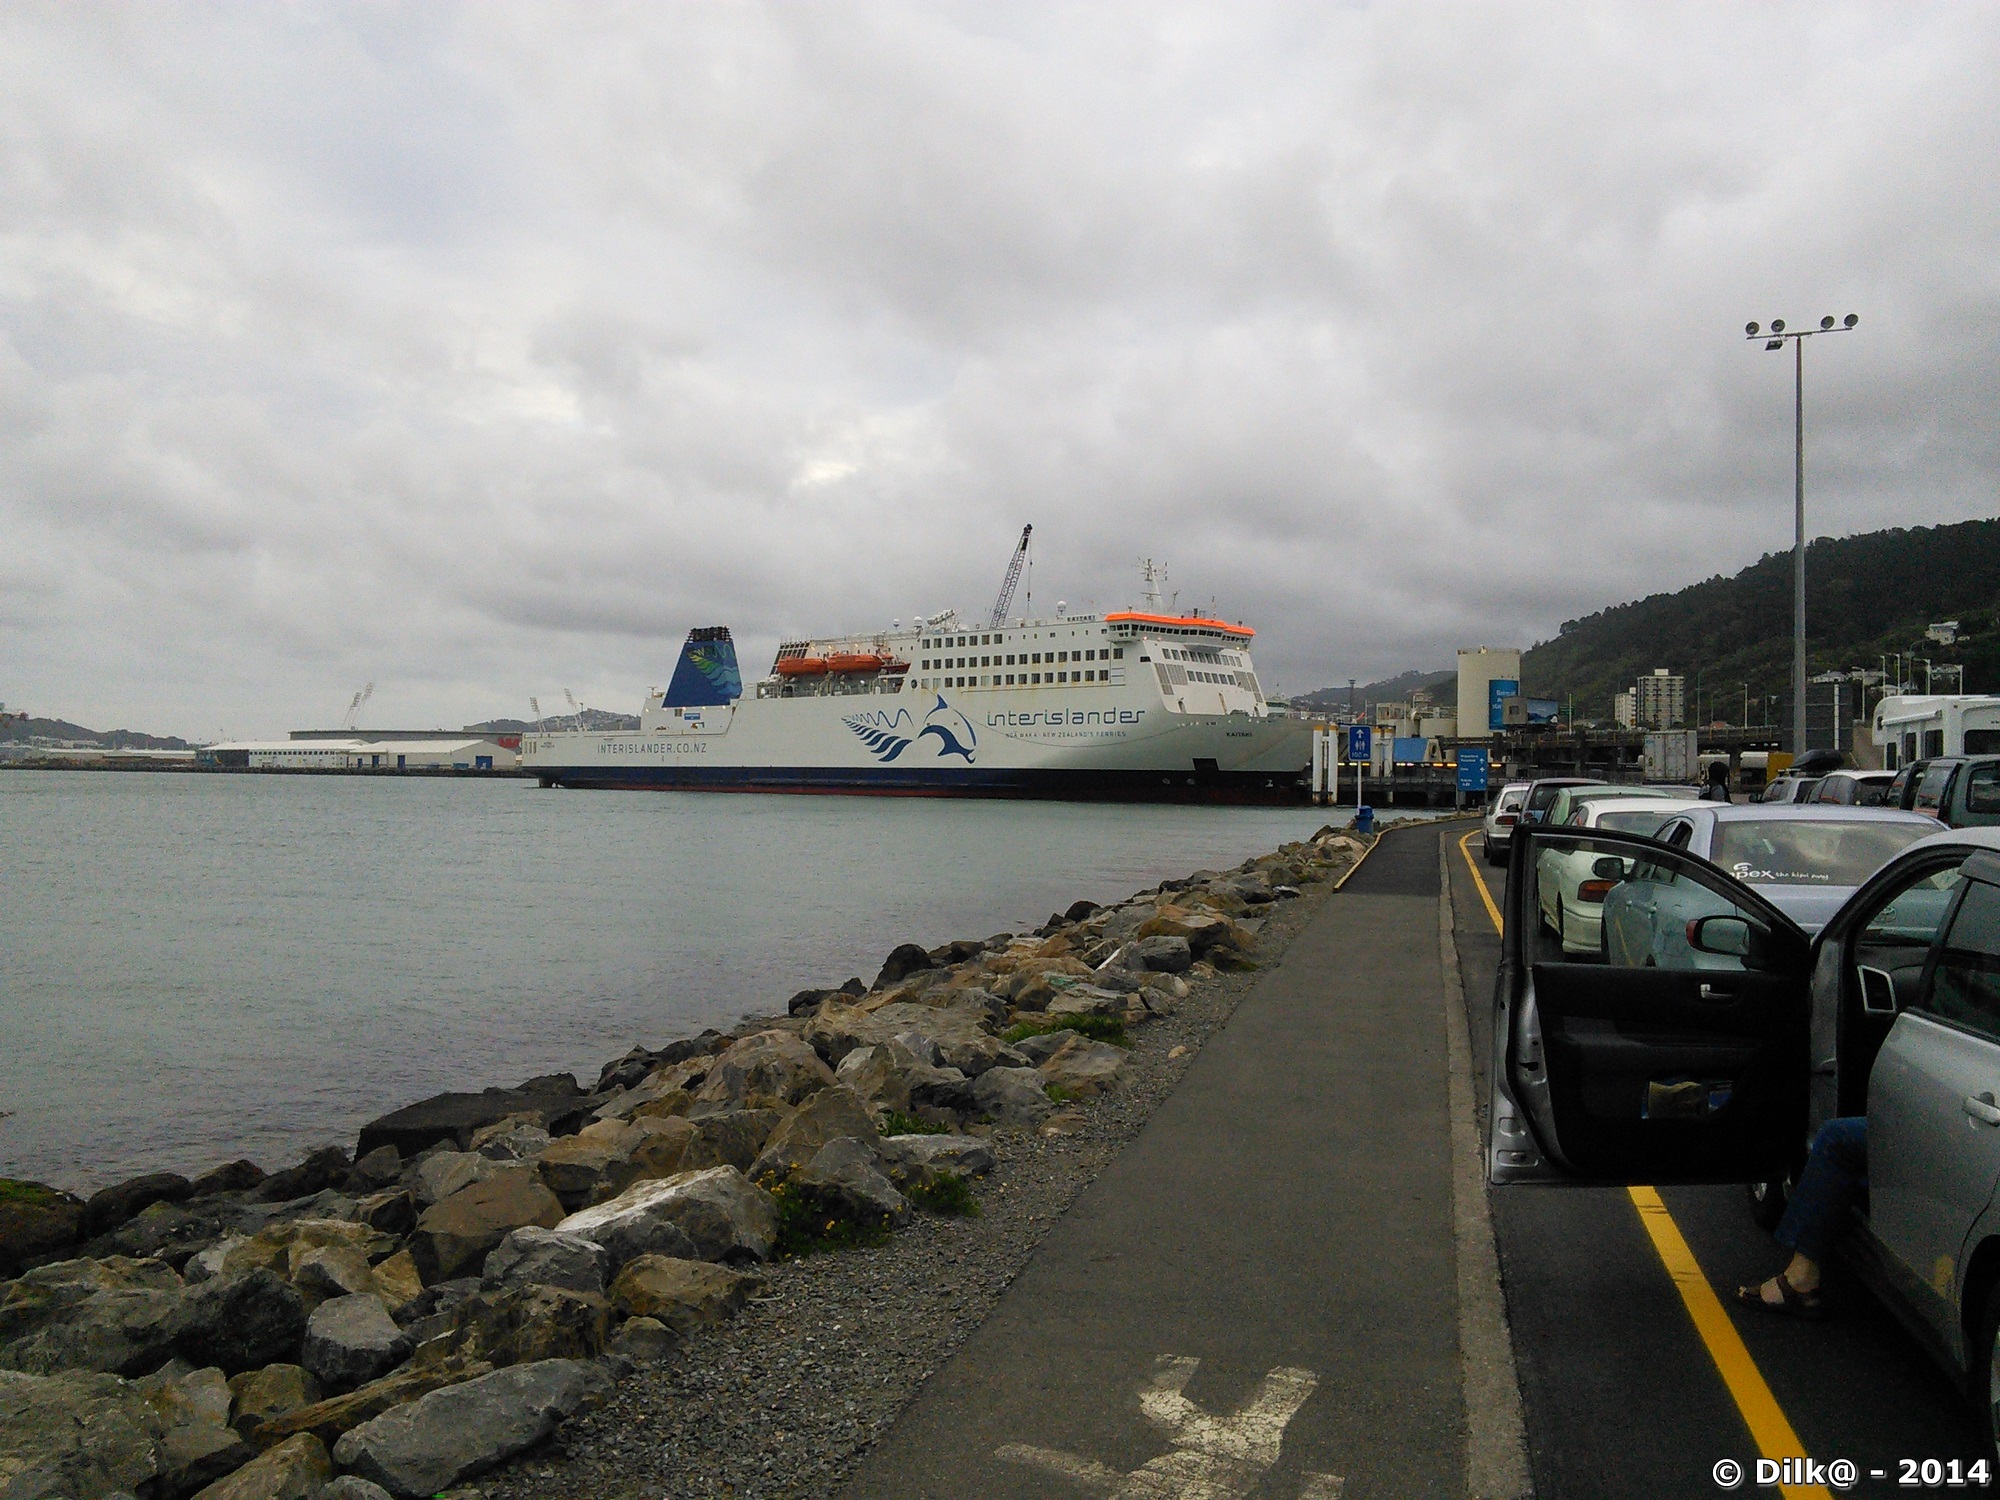 Le ferry dans le port de Wellington